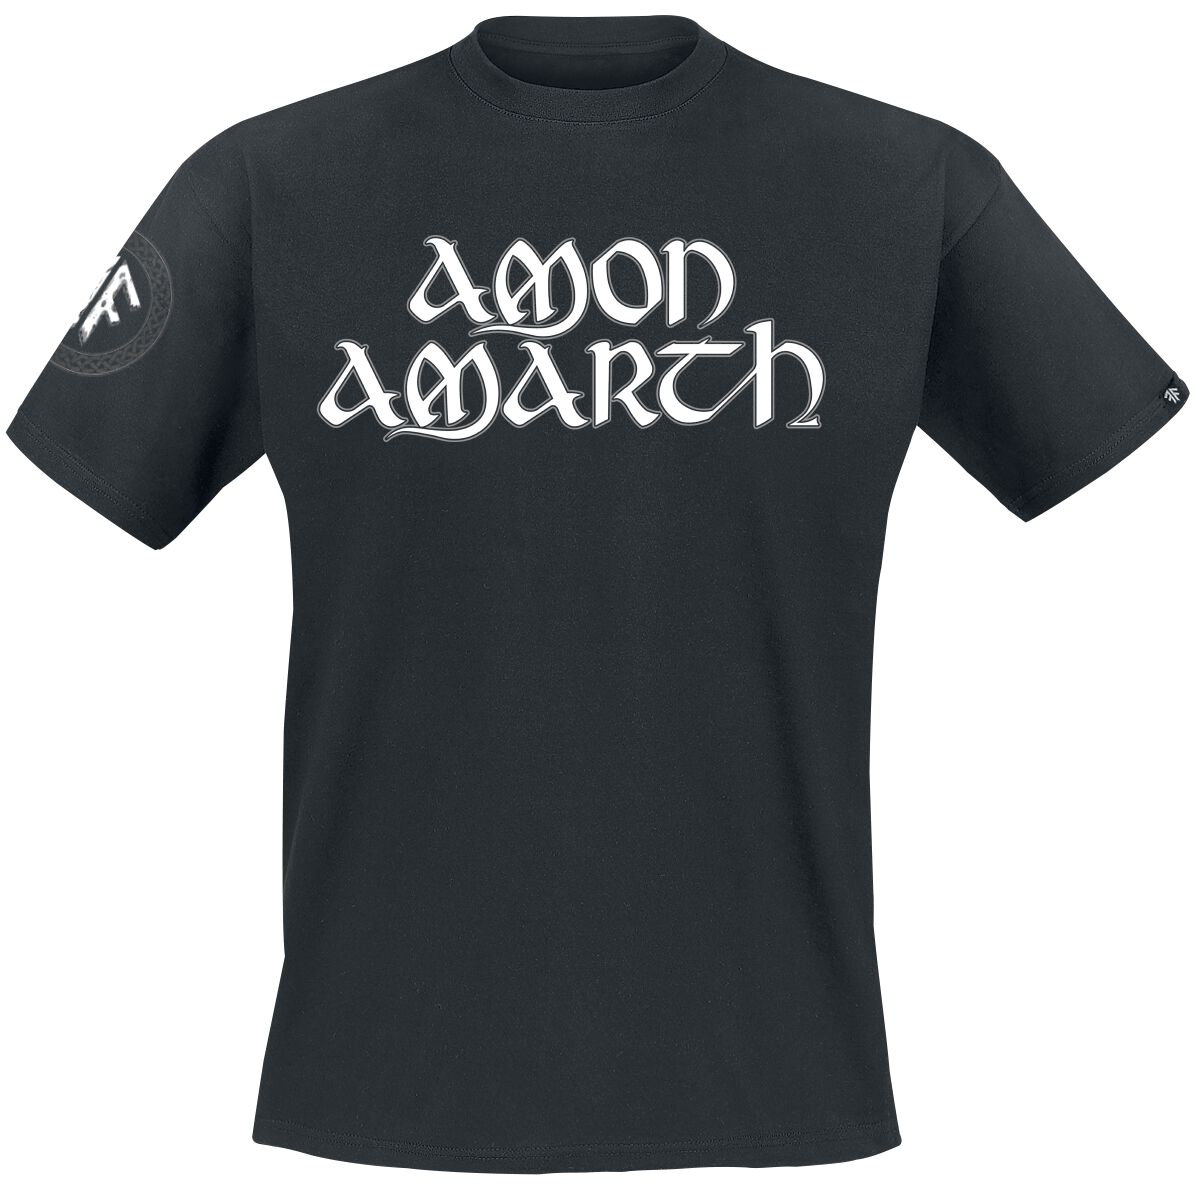 Amon Amarth T-Shirt - Mjoelner - S bis XXL - für Männer - Größe S - schwarz  - EMP exklusives Merchandise!